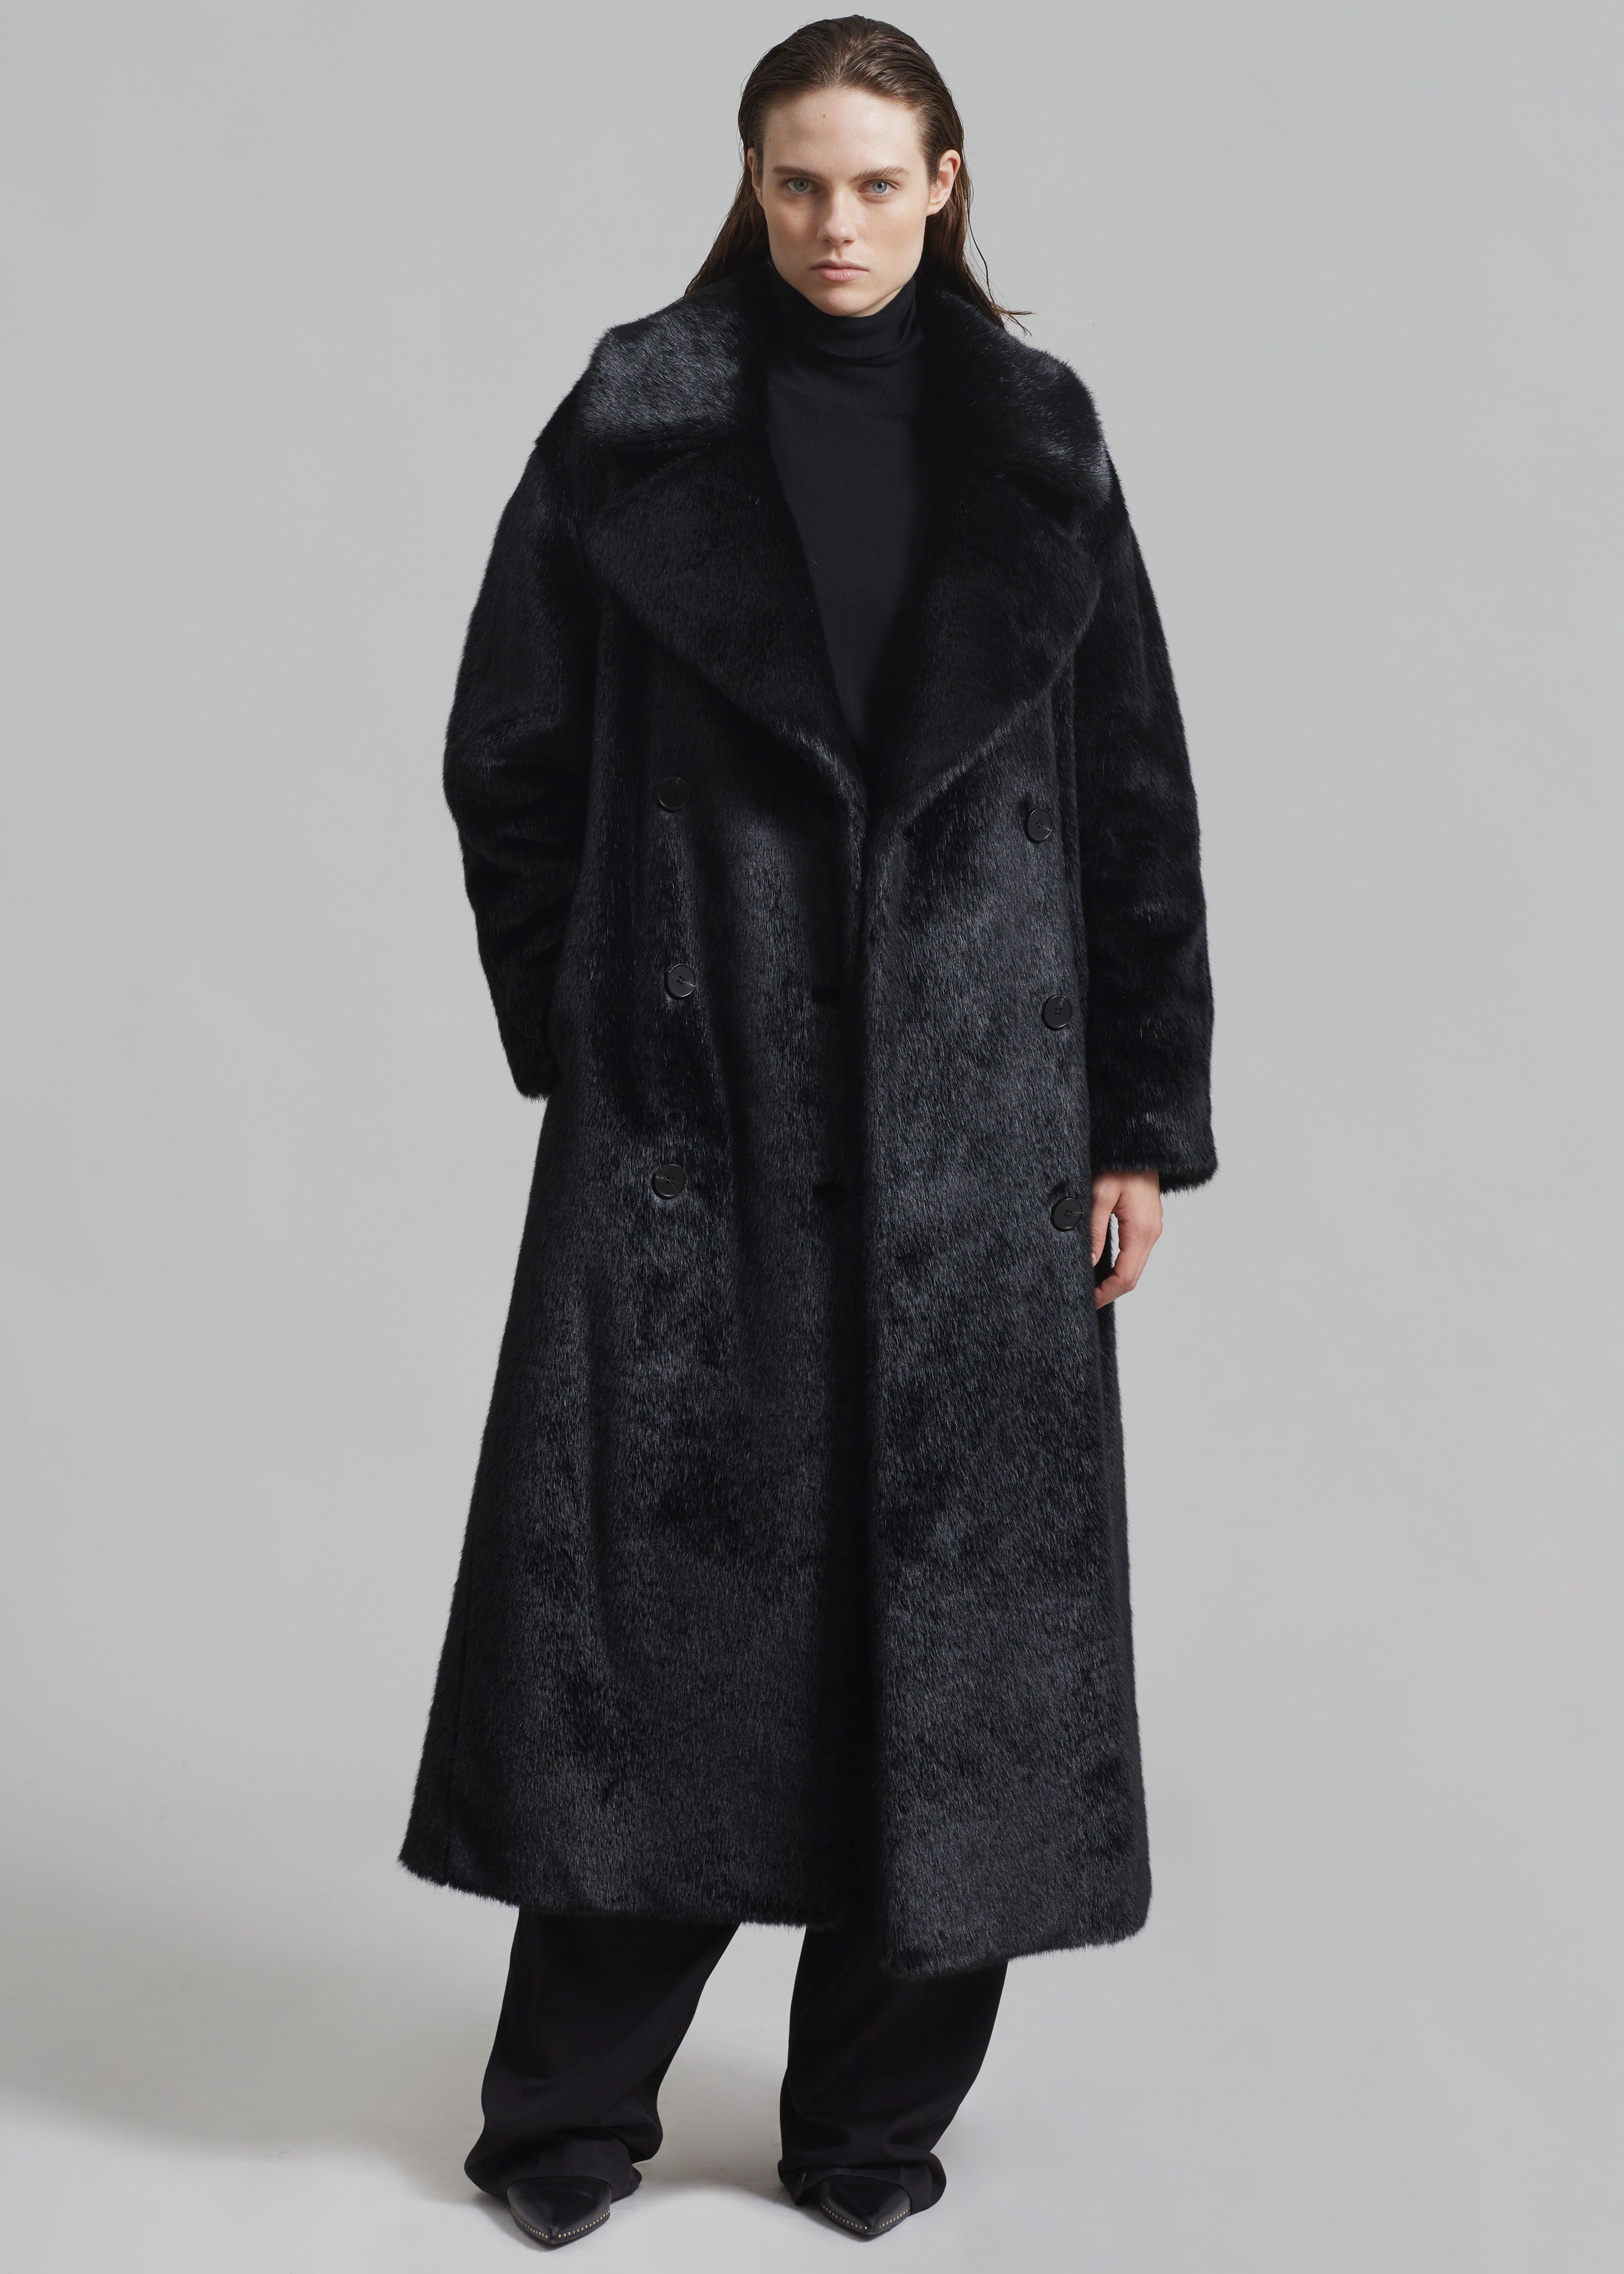 Joni Faux Fur Coat - Black - 6